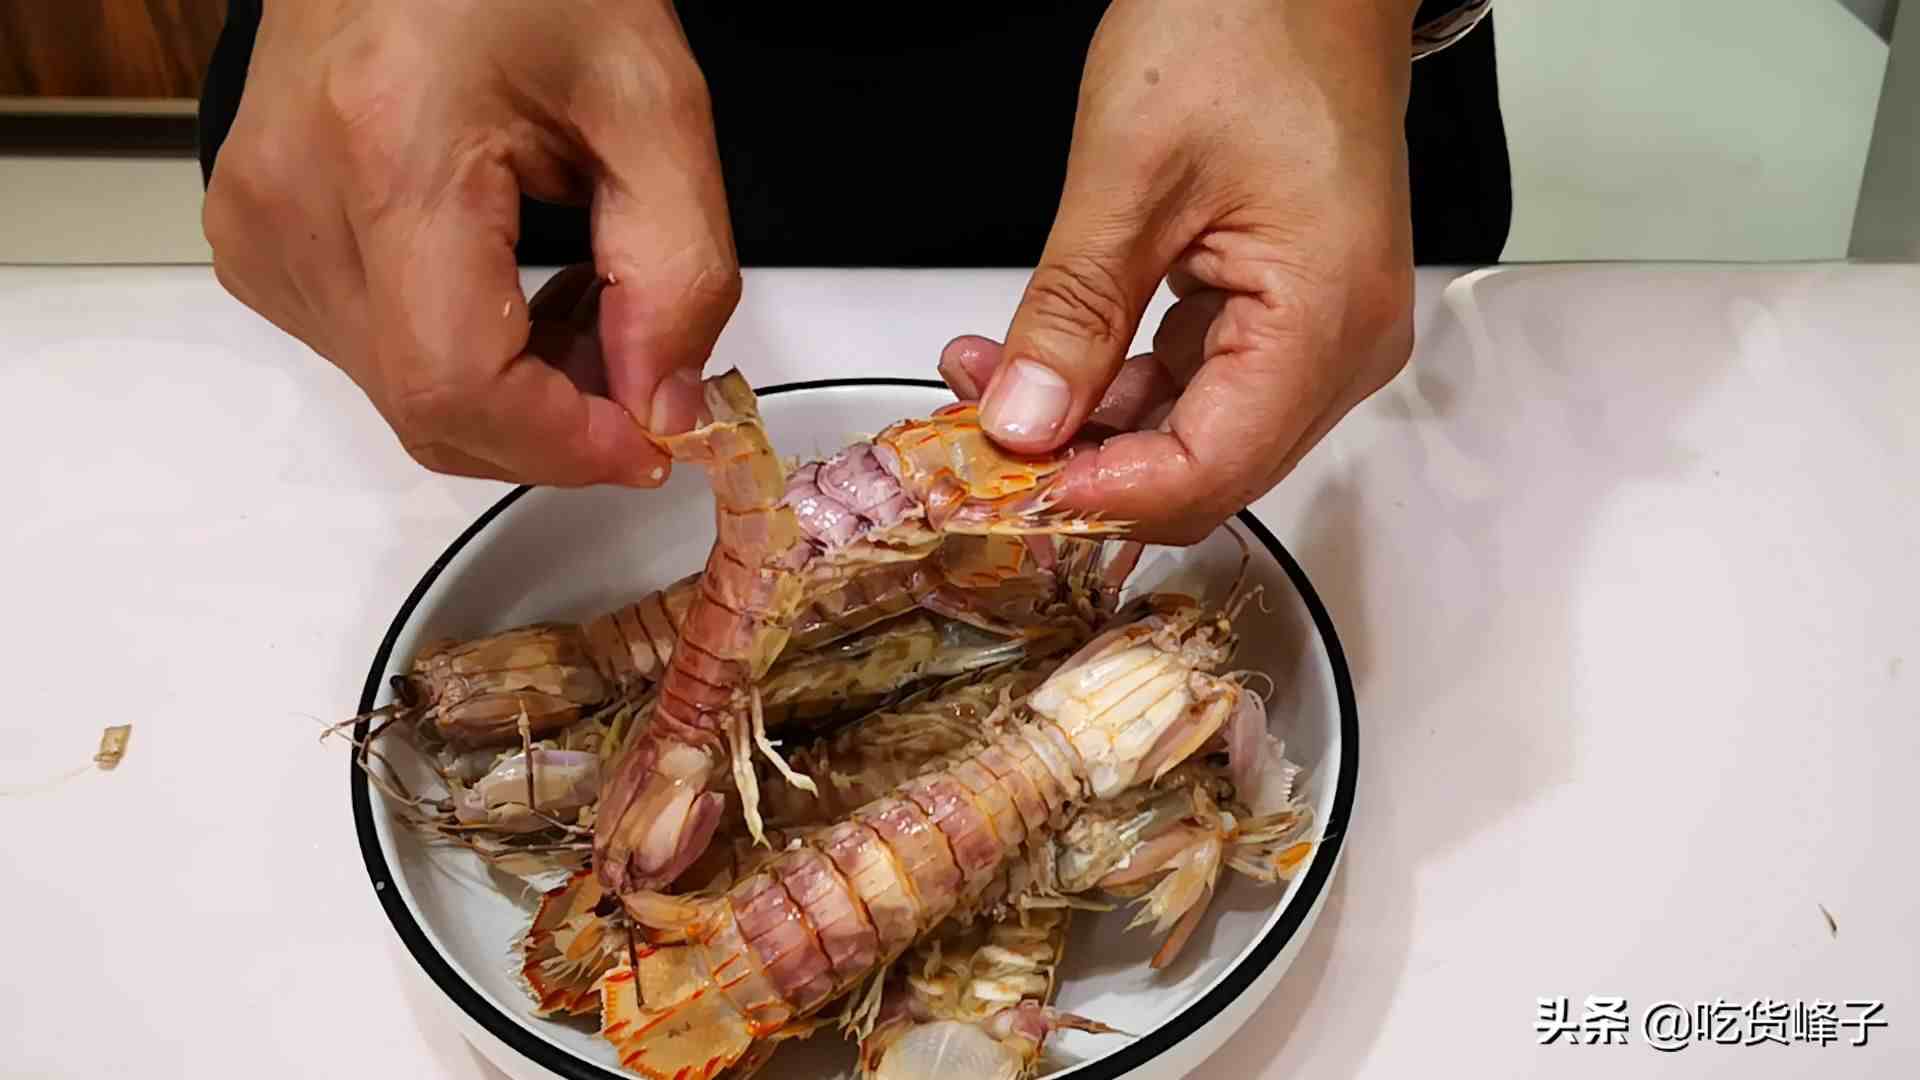 皮皮虾怎么剥|爱吃皮皮虾的要留意原来剥壳是如此的简单